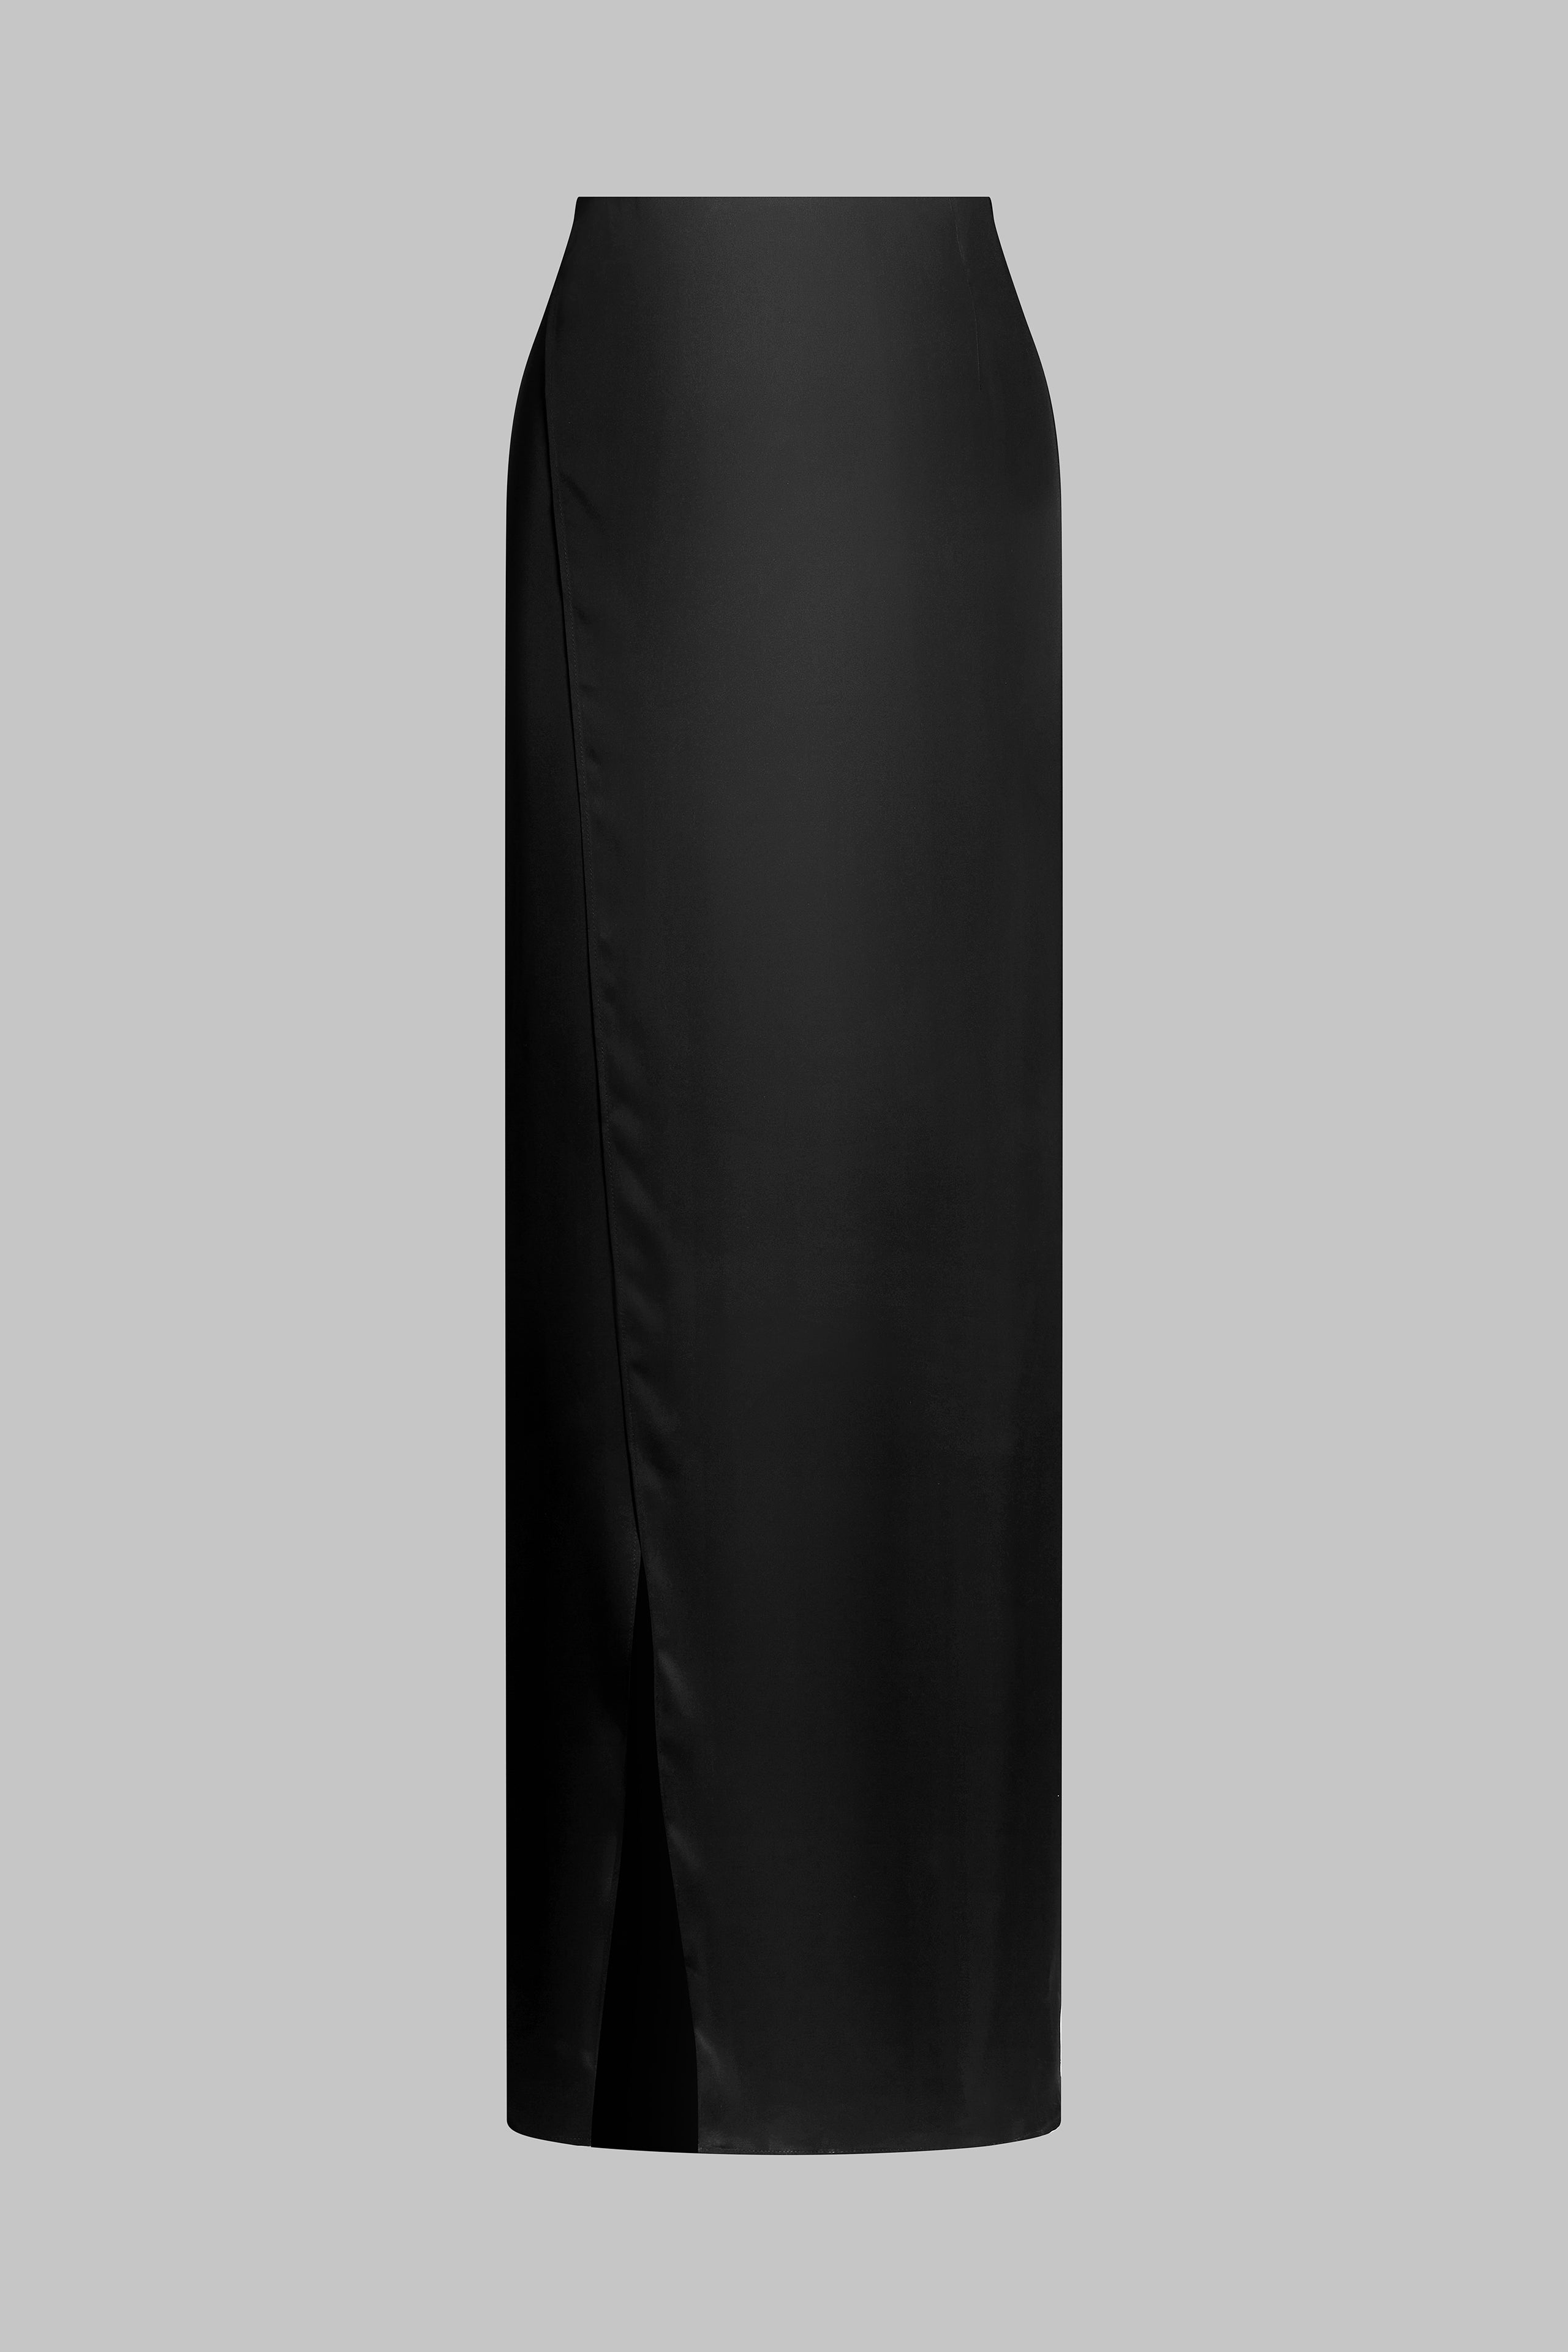 025 - Long satin wrap skirt